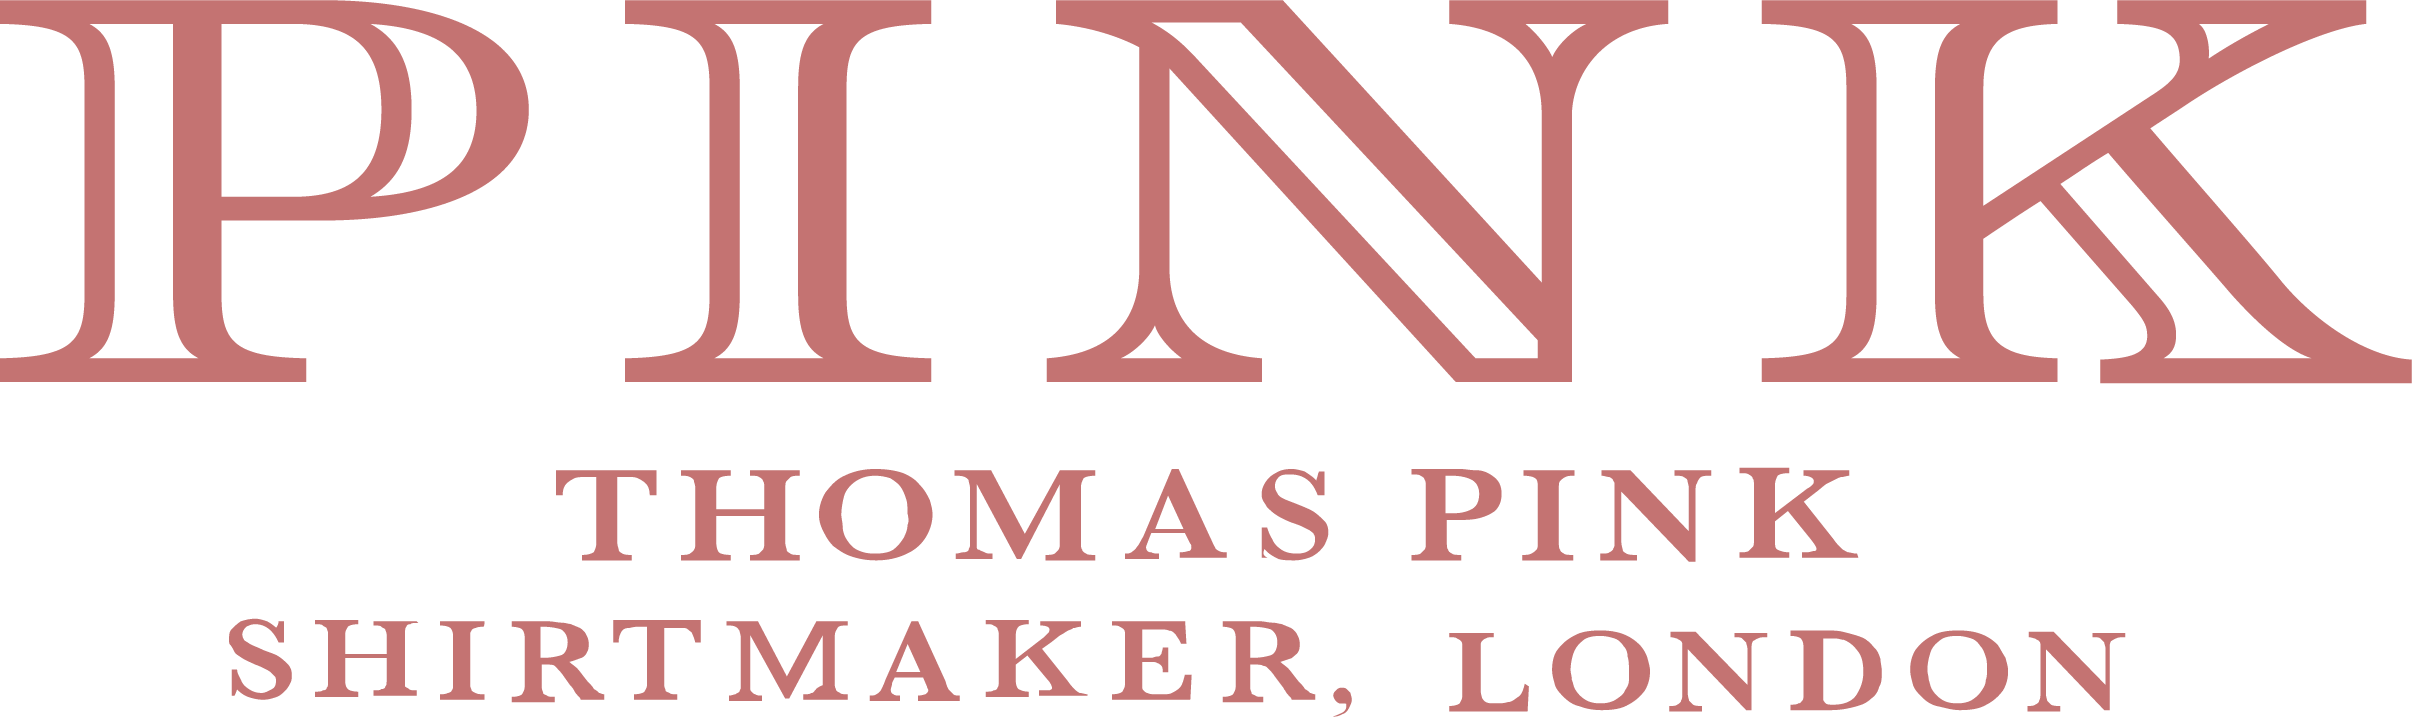 Thomas Pink logo